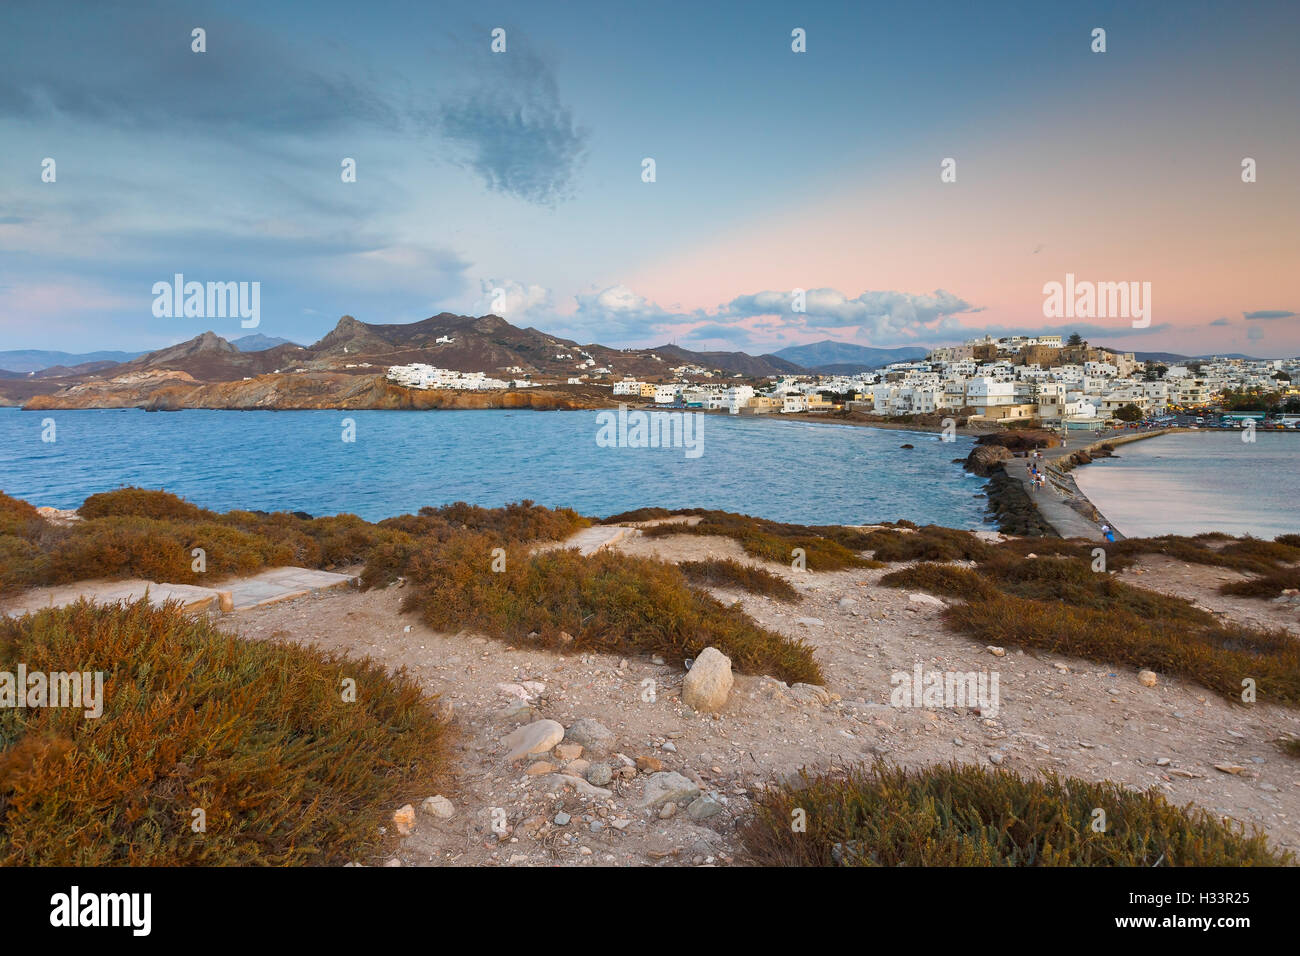 Vue de la ville de Naxos sur la mer. Banque D'Images